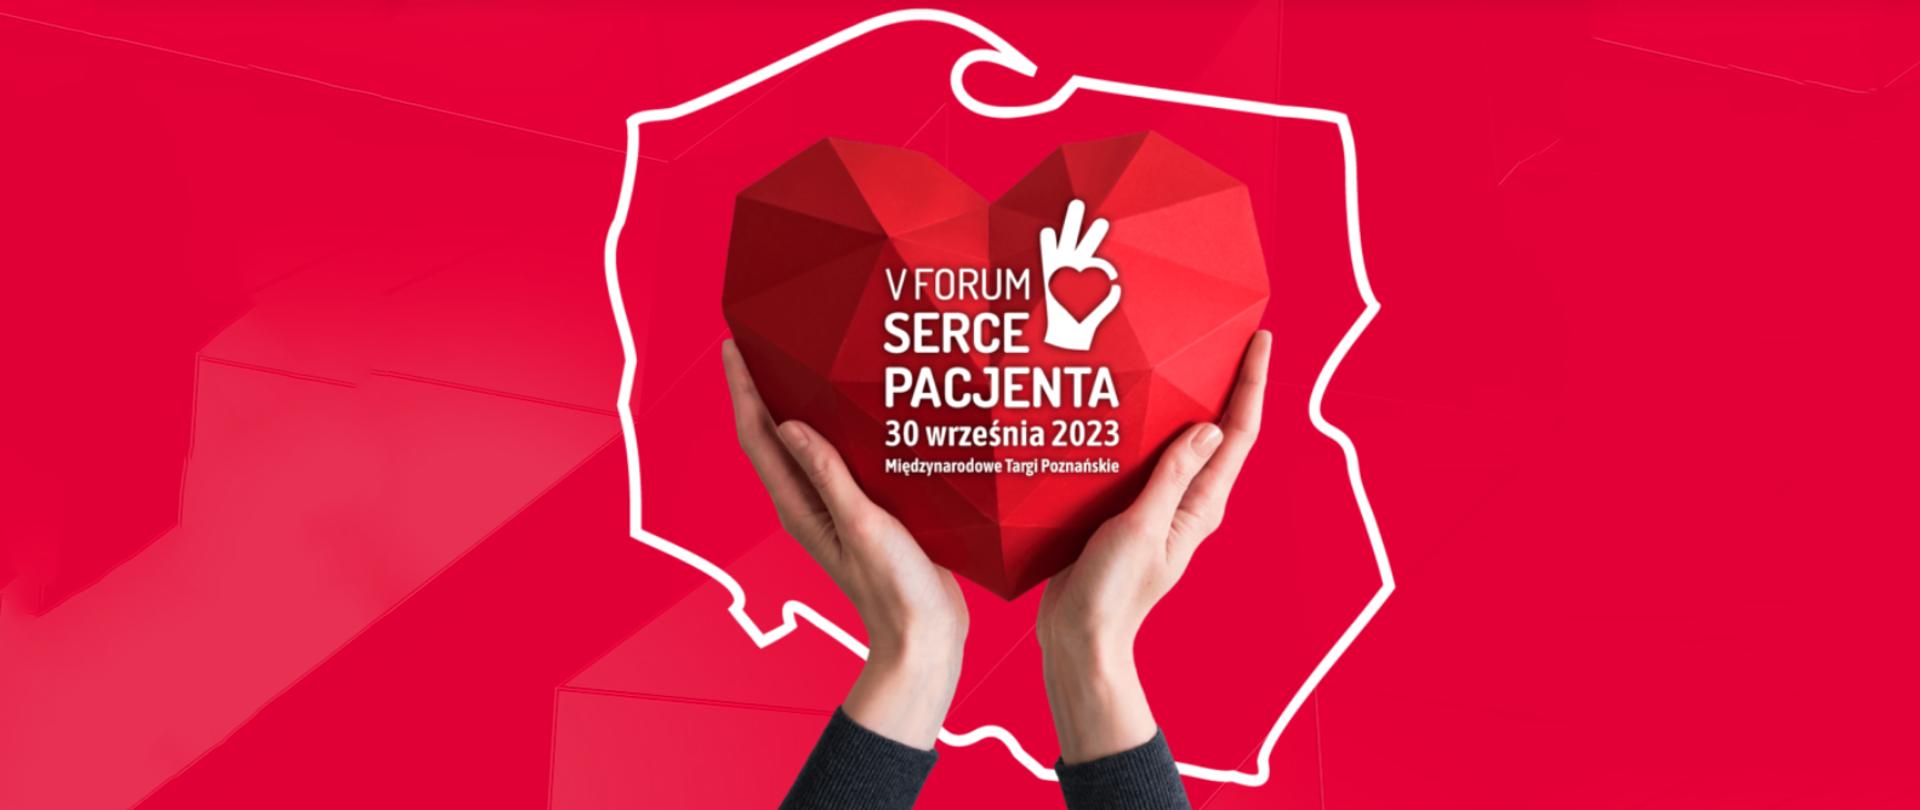 na czerwonym tle kontur Polski w środku w dłoniach trzymane serce z napisem V Forum Dla Serca Pacjenta 30 września 2023 Międzynarodowe Targi Poznańskie.